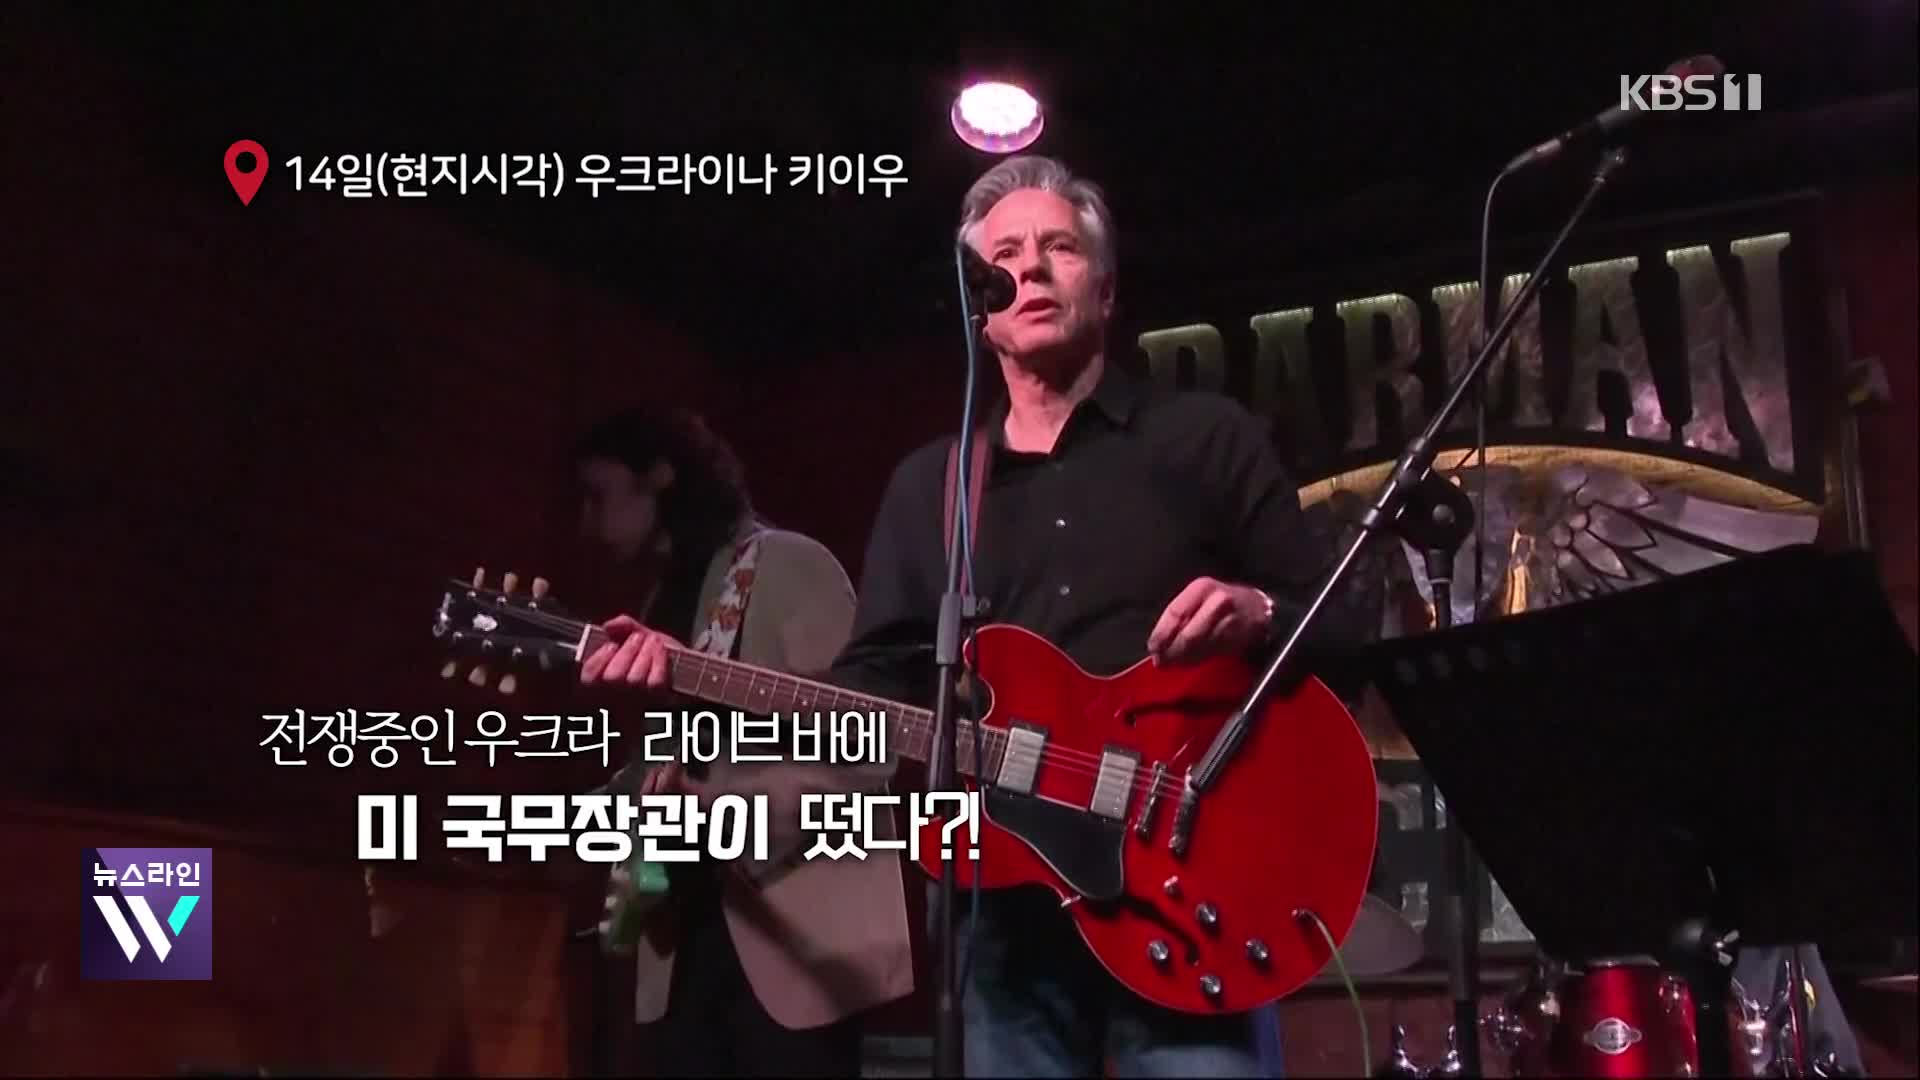 [오늘의 영상] 블링컨, 우크라 바에서 ‘깜짝 공연’…기타 연주하며 열창